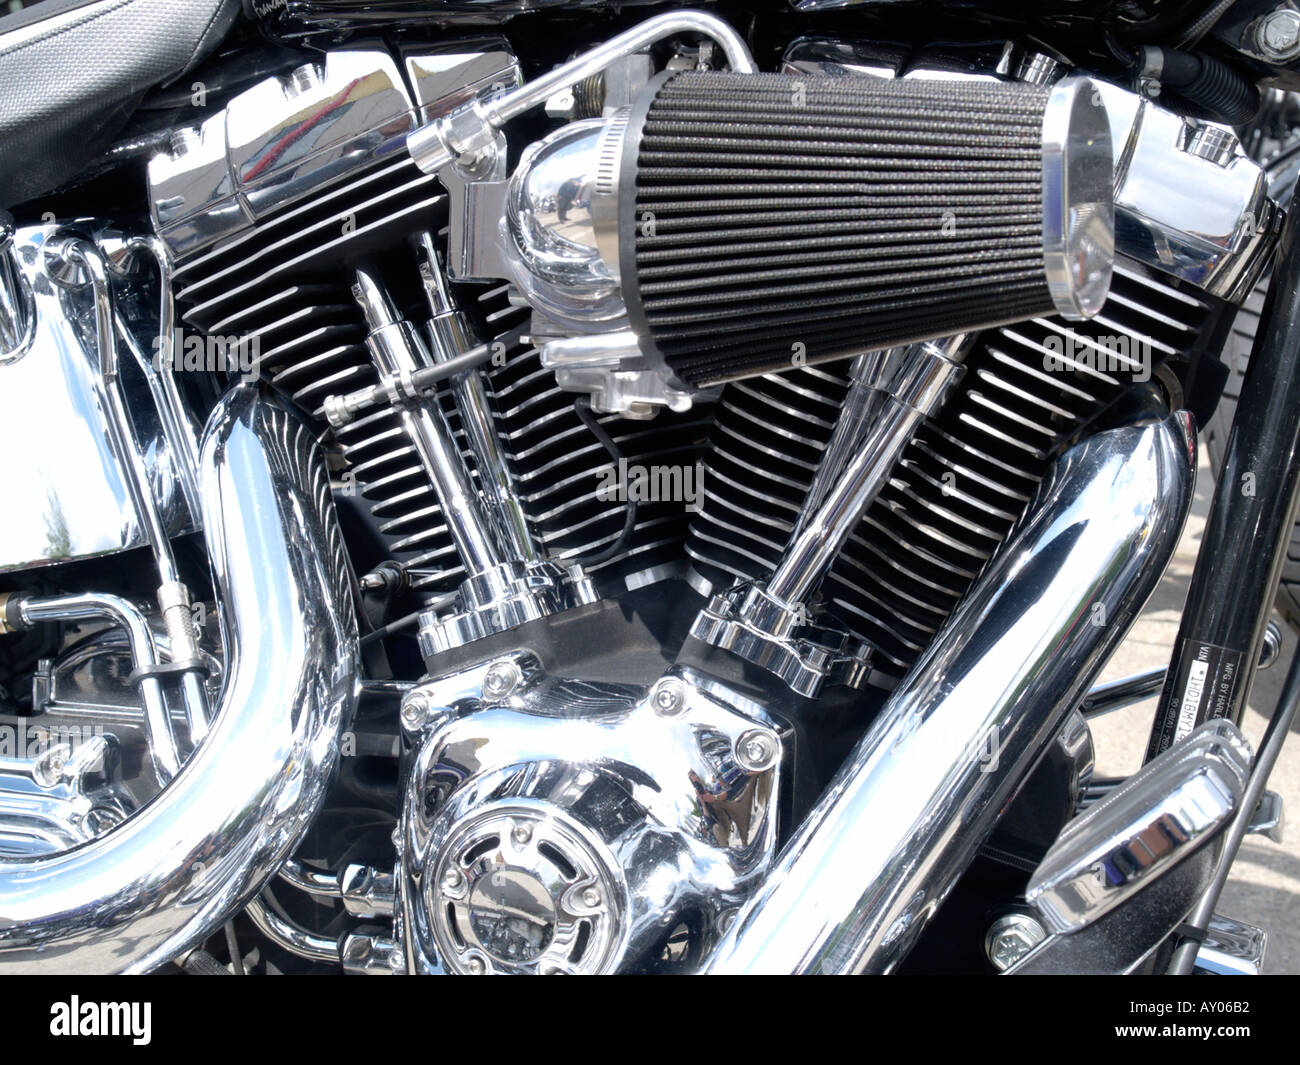 Shiny lucidati Harley Davidson v twin motore con un sacco di cromo e un aftermarket filtro aria Foto Stock